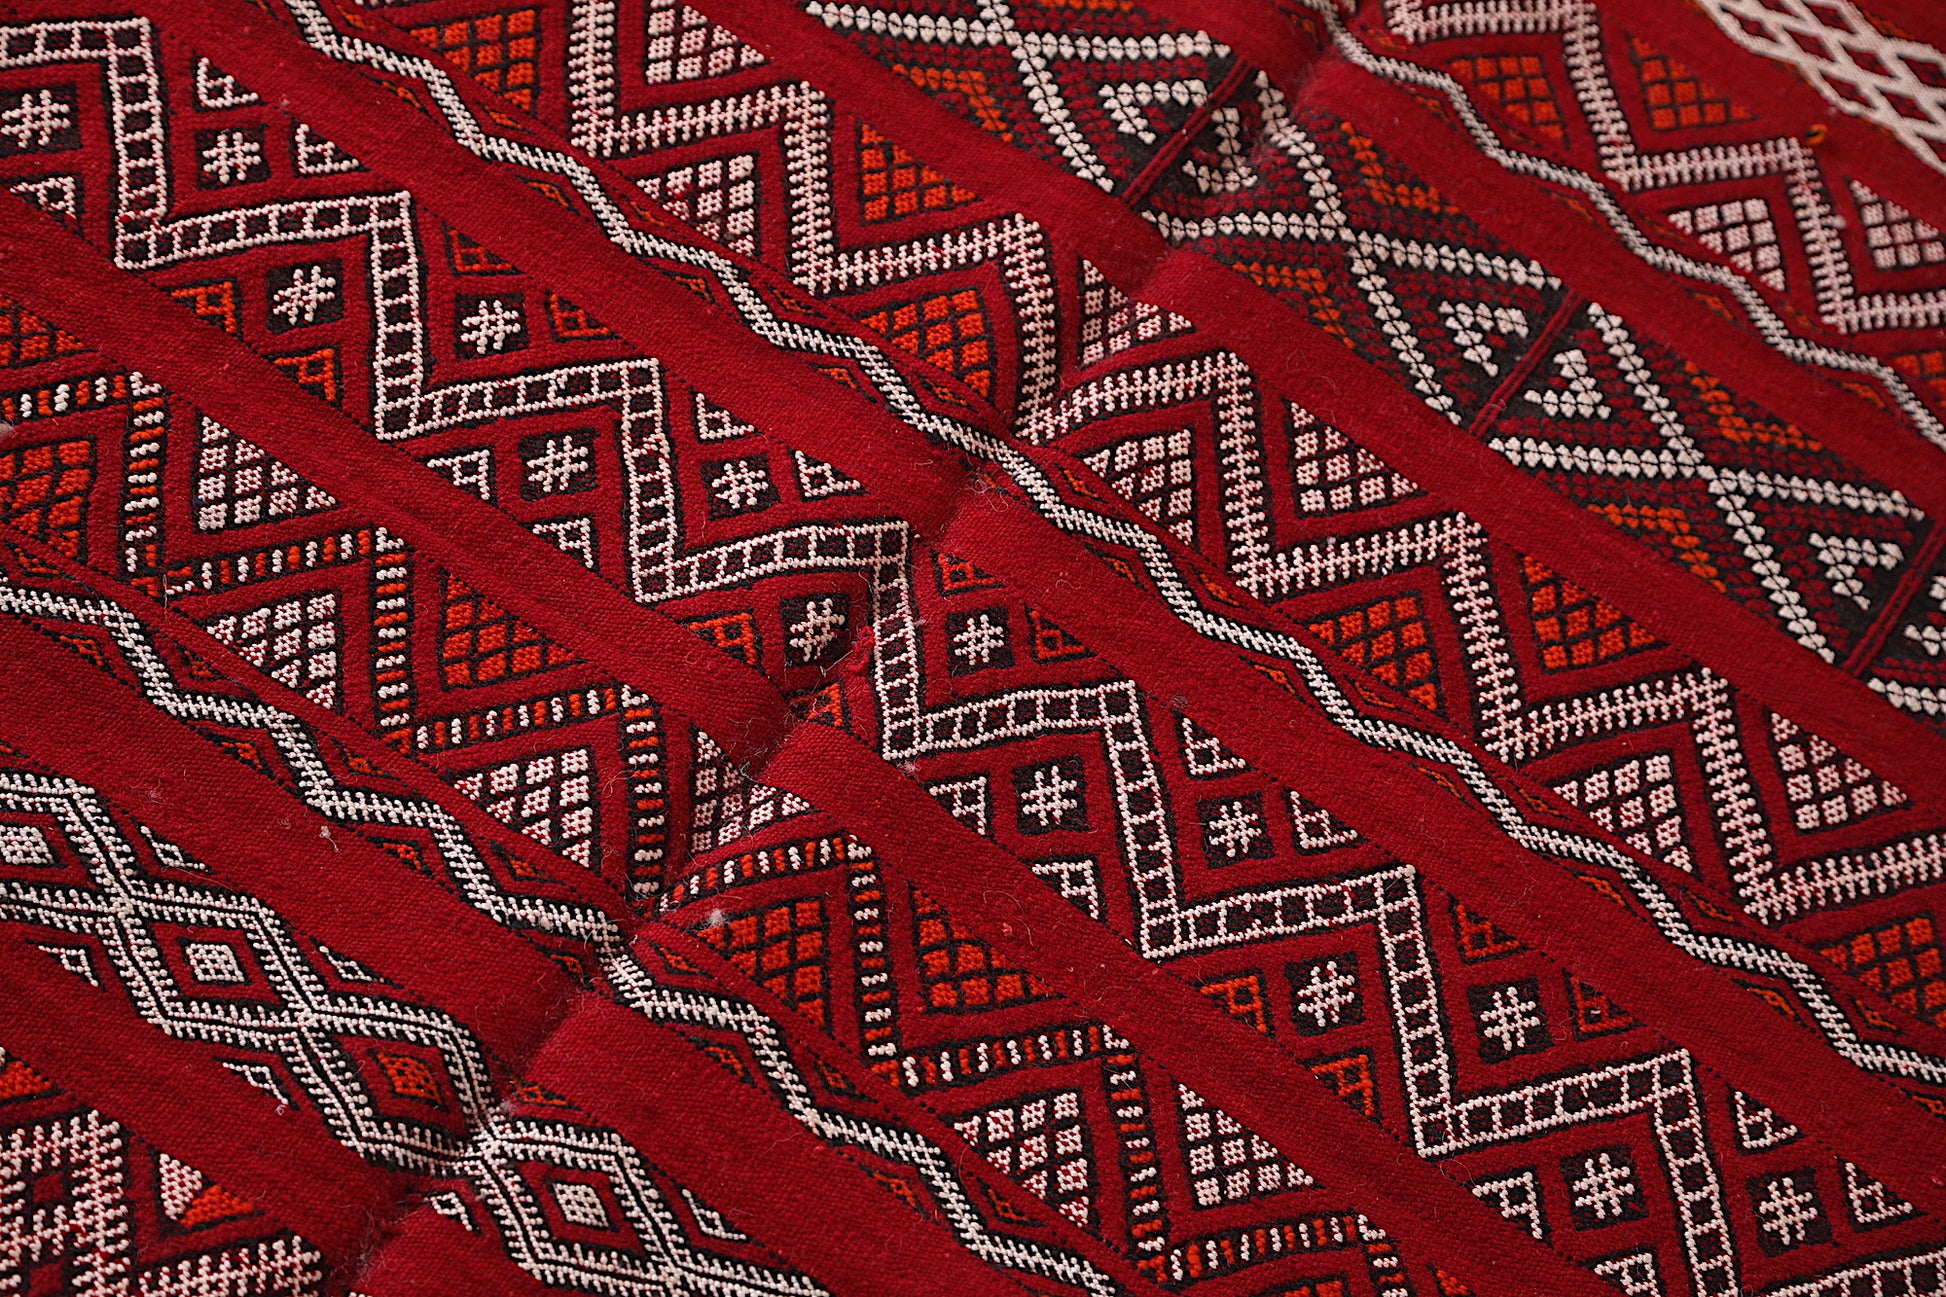 Hand Woven berber rug 5.4ft x 9.9ft